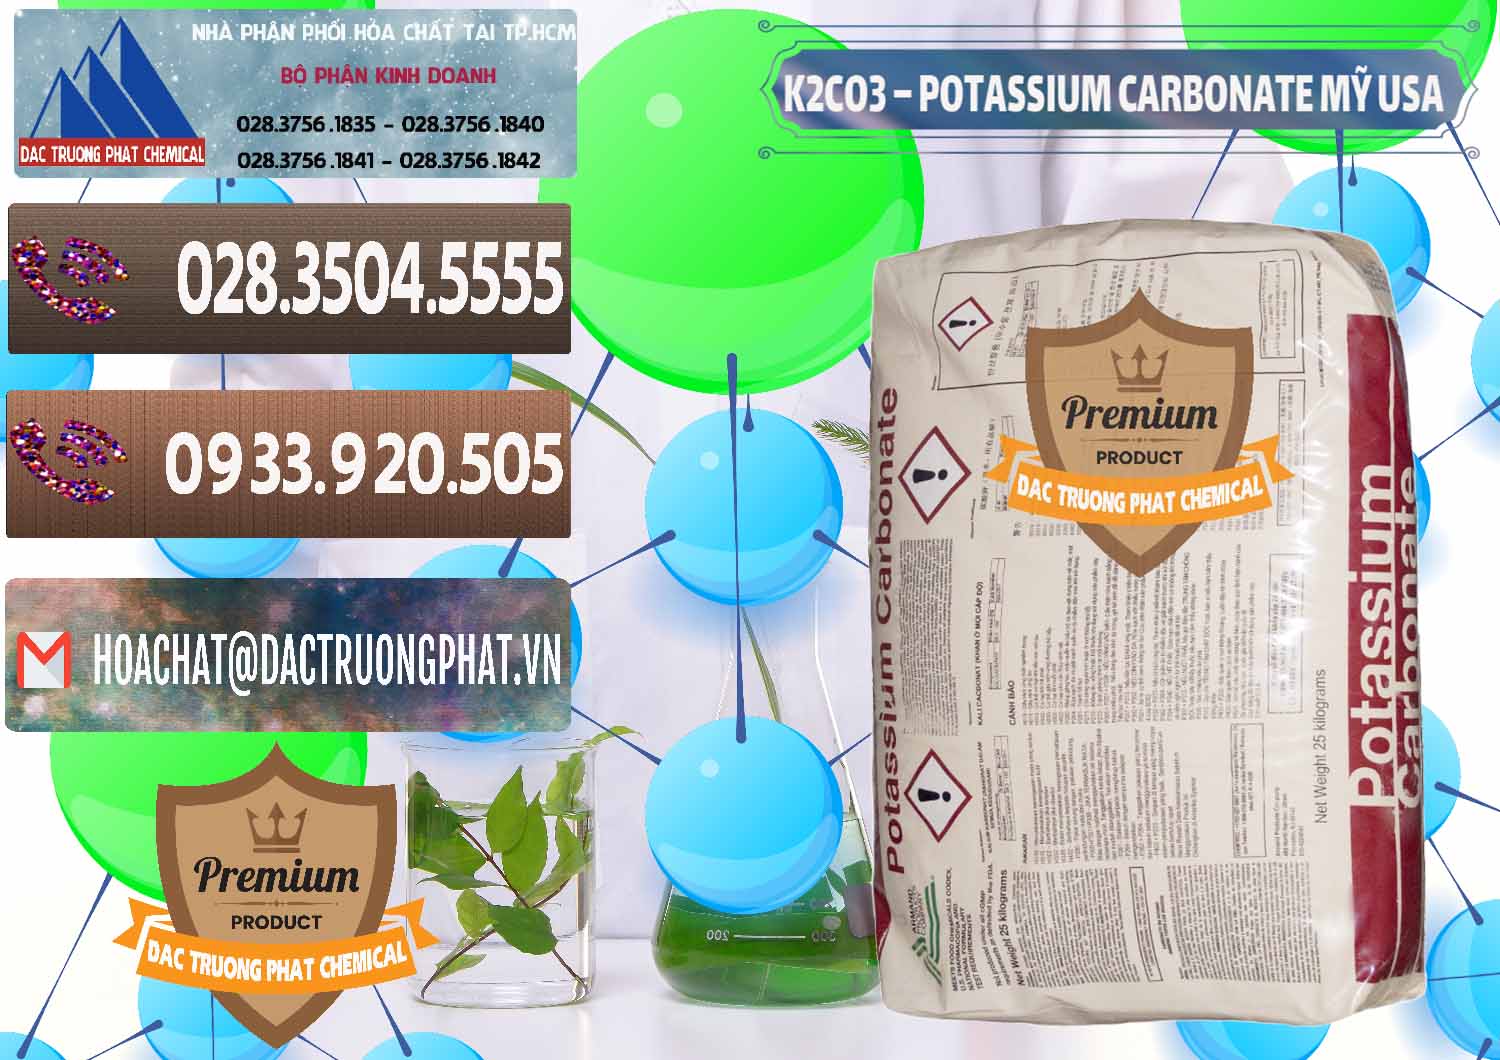 Nơi chuyên phân phối và bán K2Co3 – Potassium Carbonate Mỹ USA - 0082 - Nơi chuyên phân phối - cung ứng hóa chất tại TP.HCM - hoachatviet.net